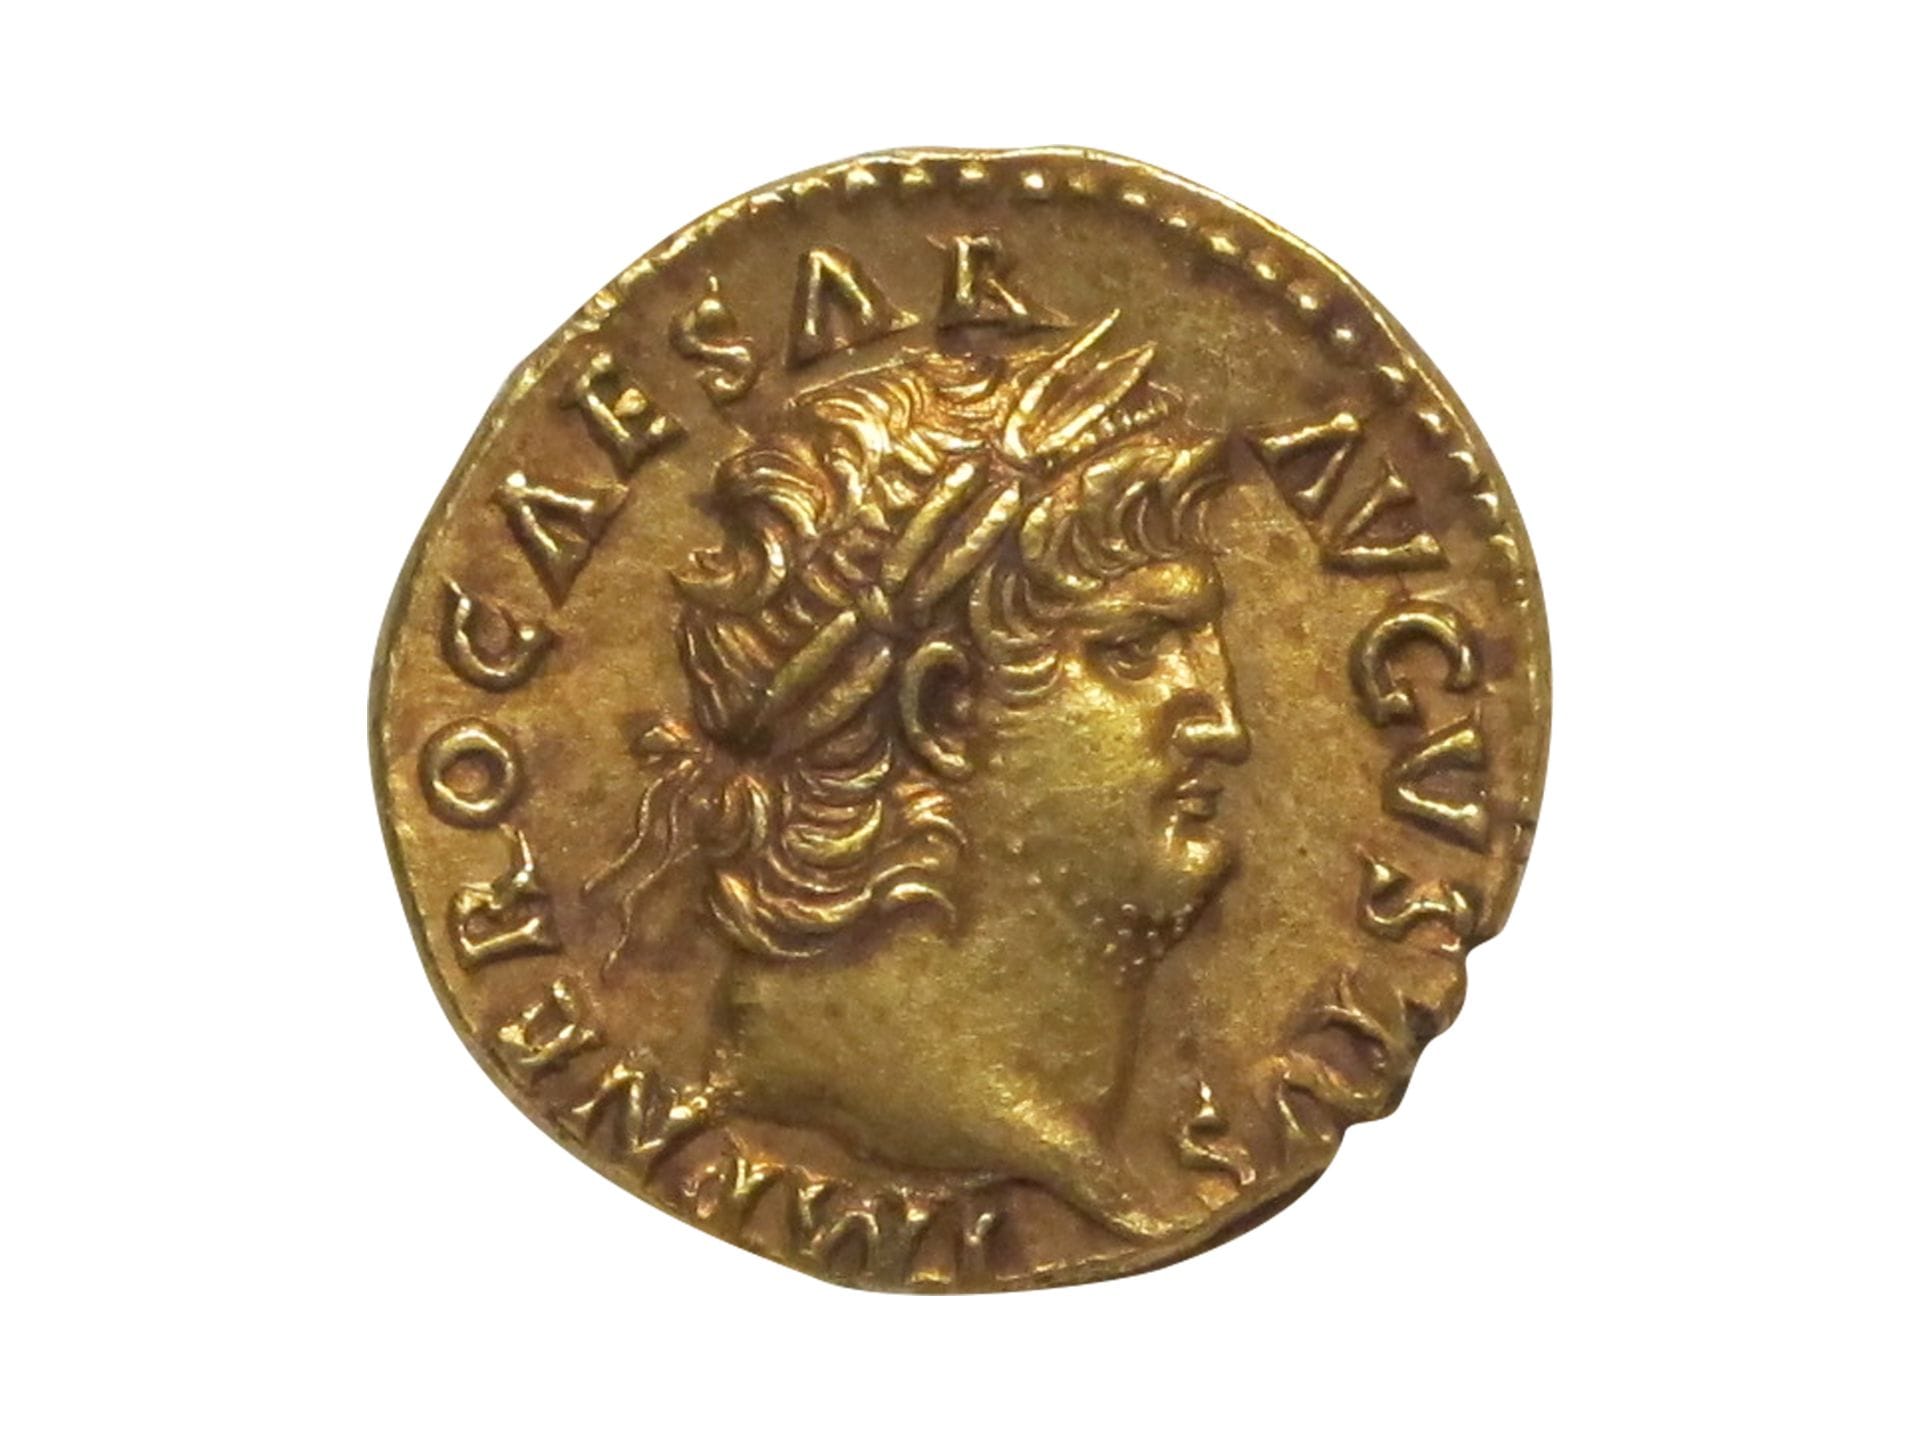 Gold aureus of Nero